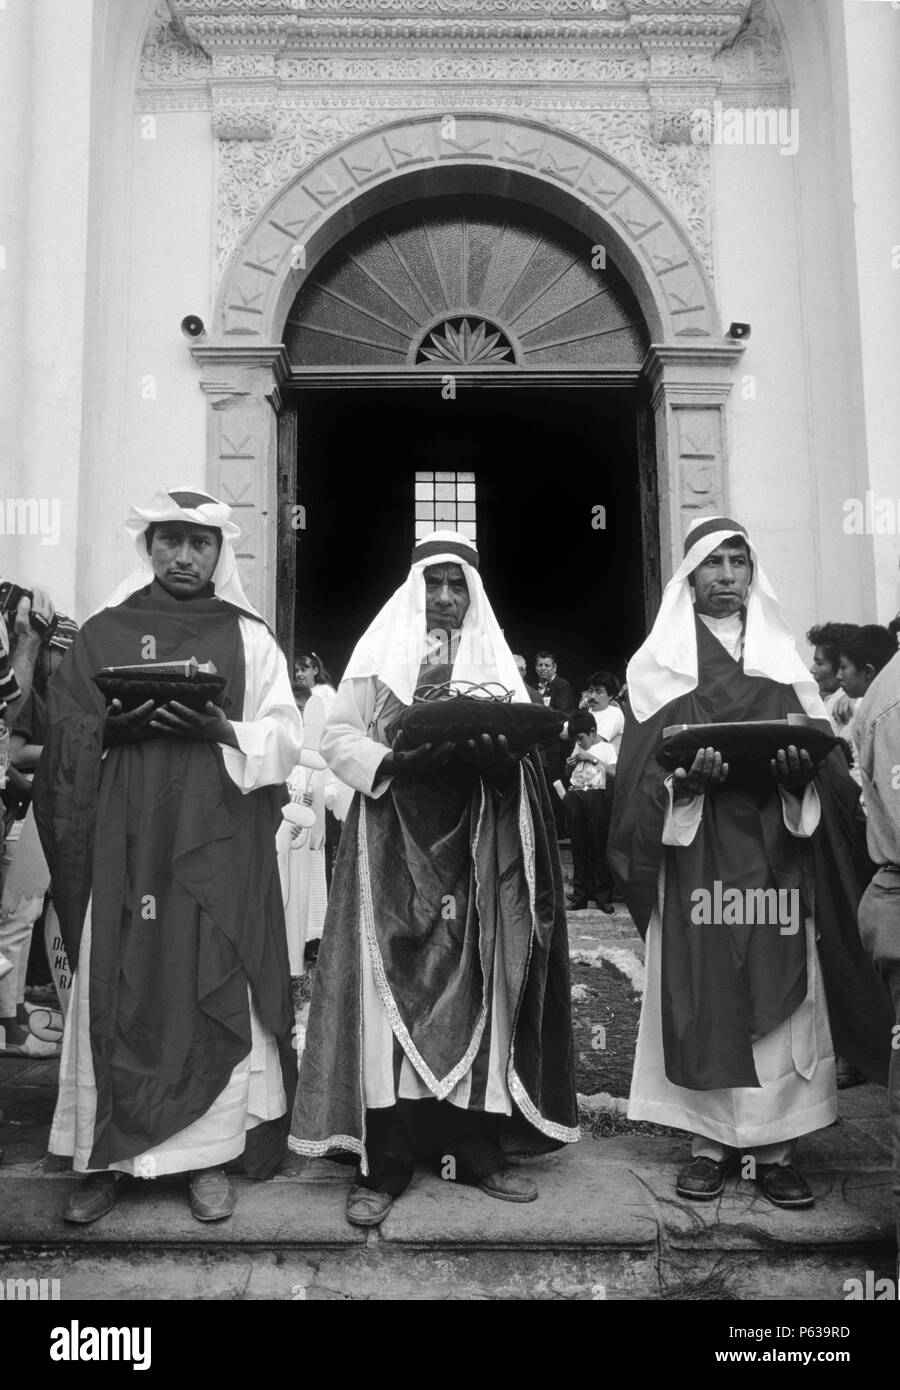 Los 3 Reyes llevando símbolos católicos CRUCIFICTION DE CRISTO durante la procesión del Viernes Santo - Antigua, Guatemala Foto de stock